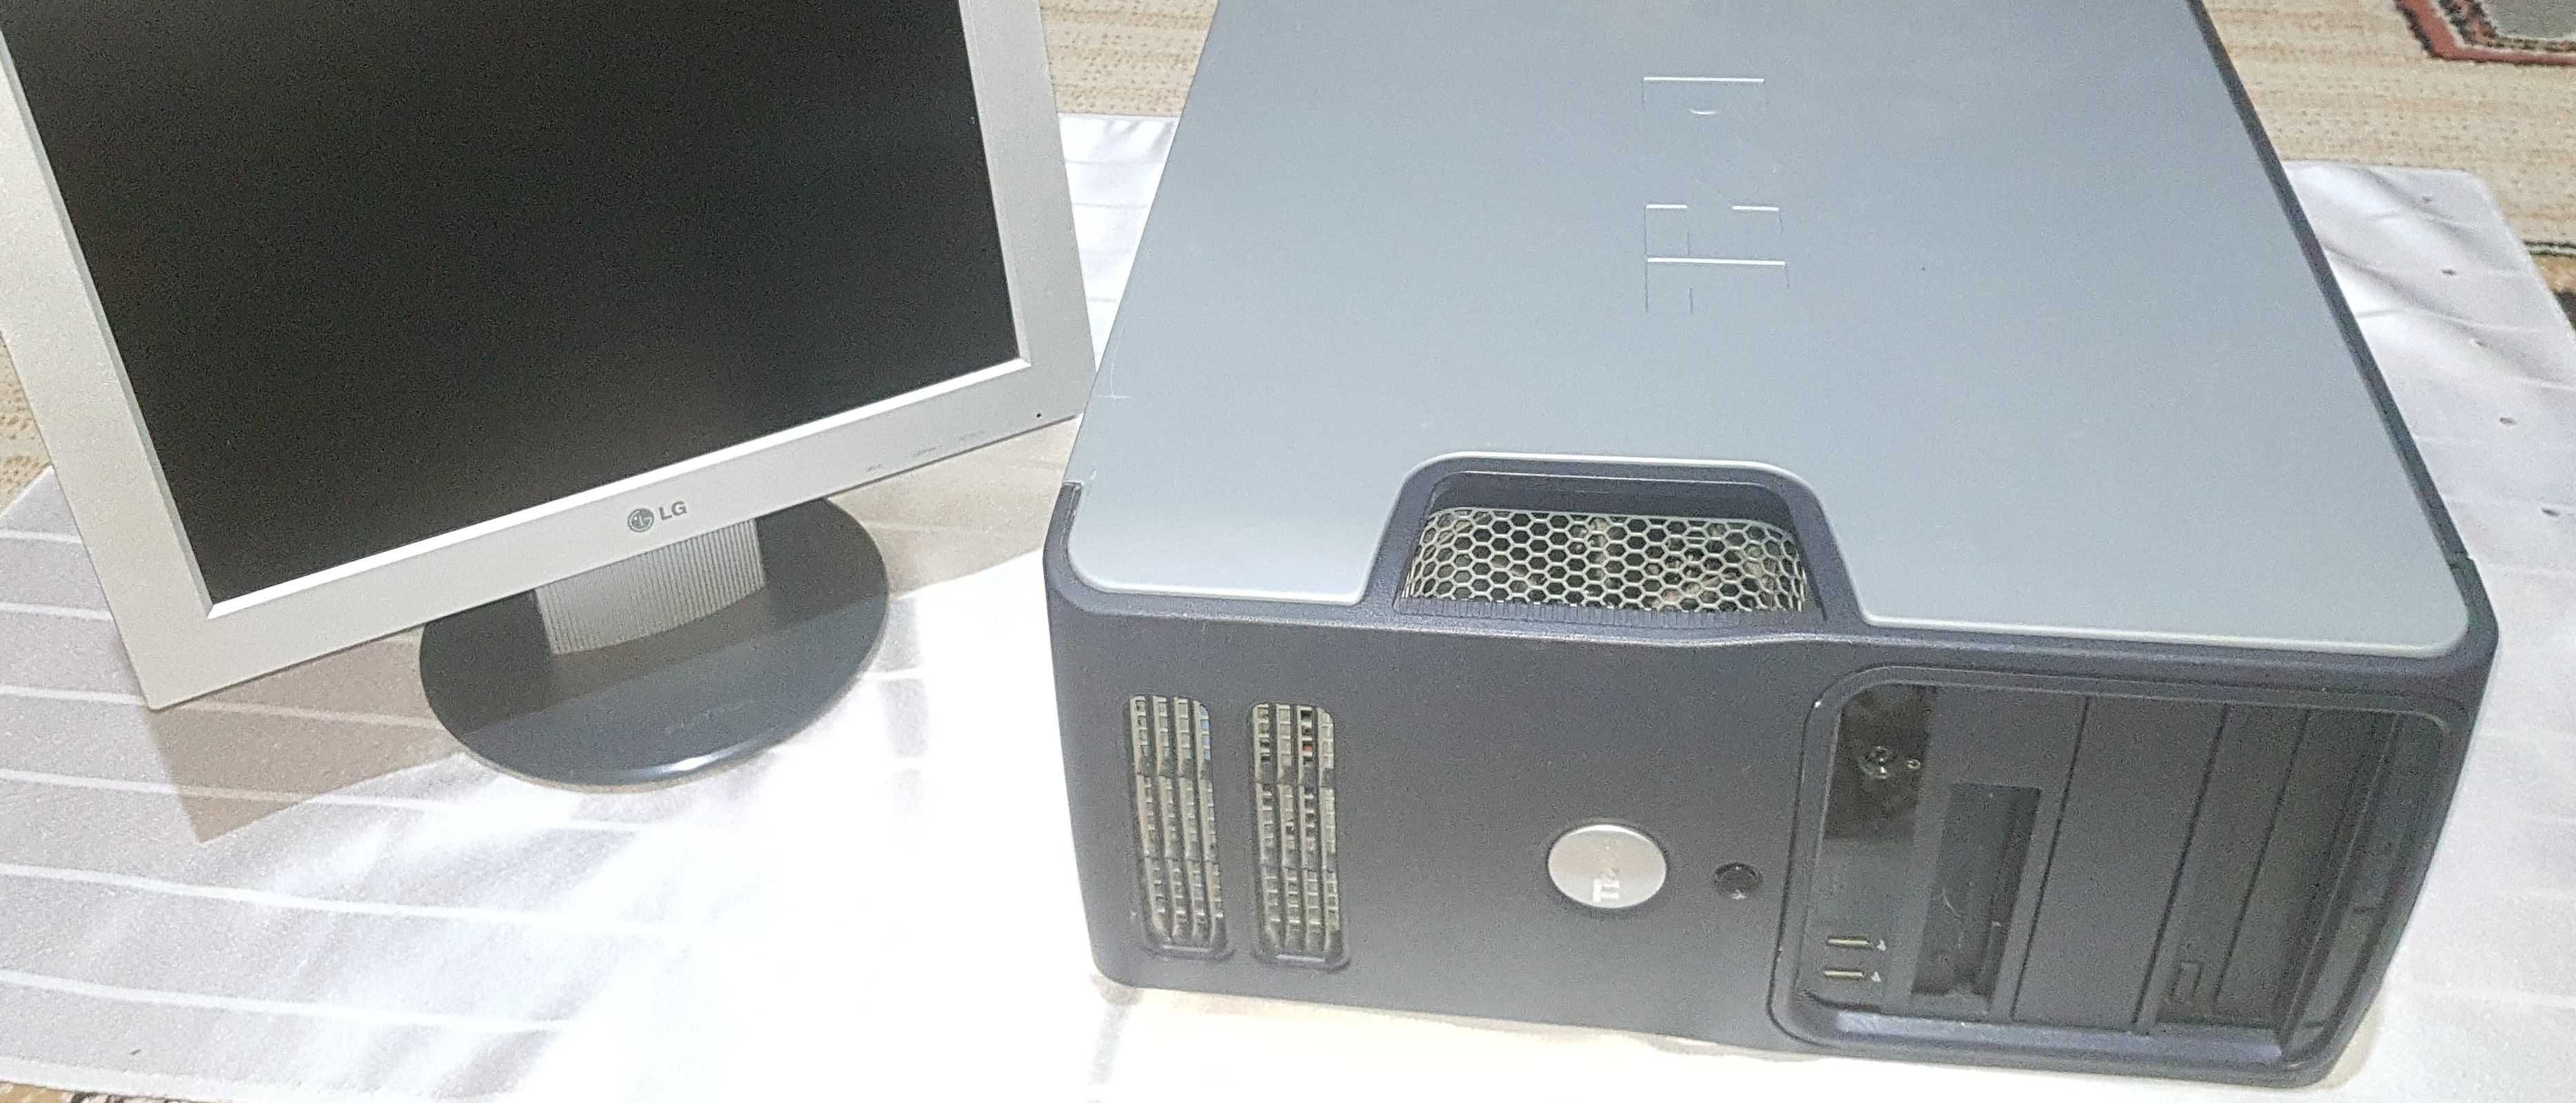 Unitate Computer DELL si Monitor LG